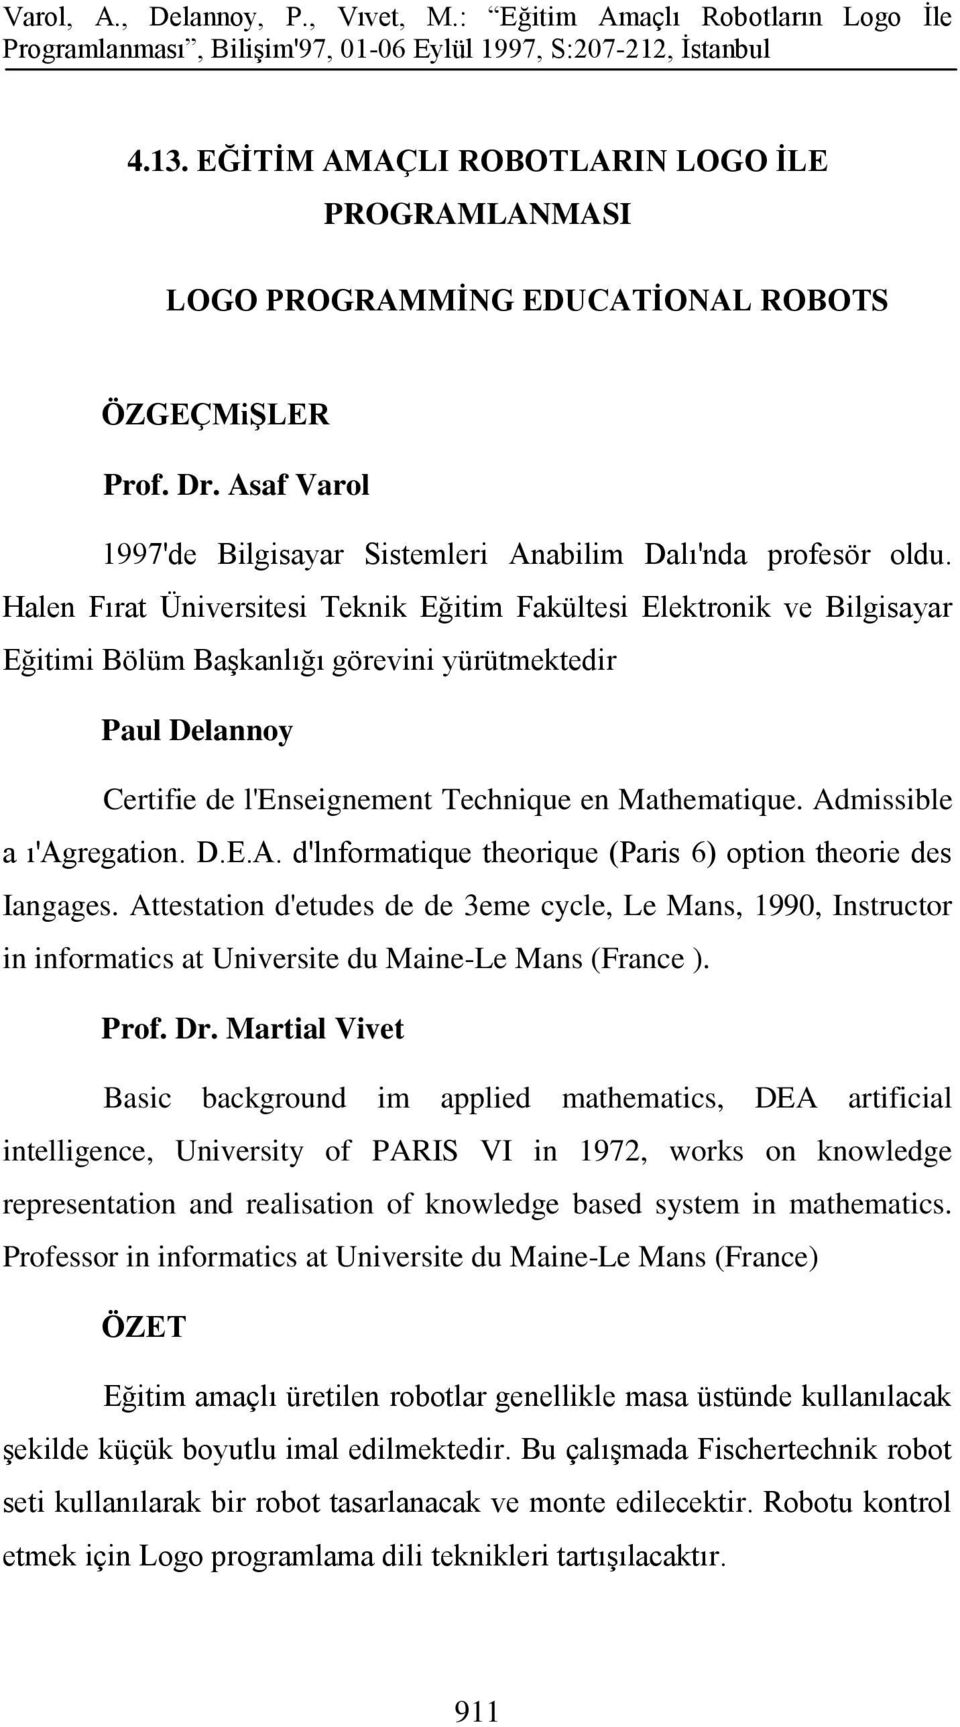 Admissible a ı'agregation. D.E.A. d'lnformatique theorique (Paris 6) option theorie des Iangages.